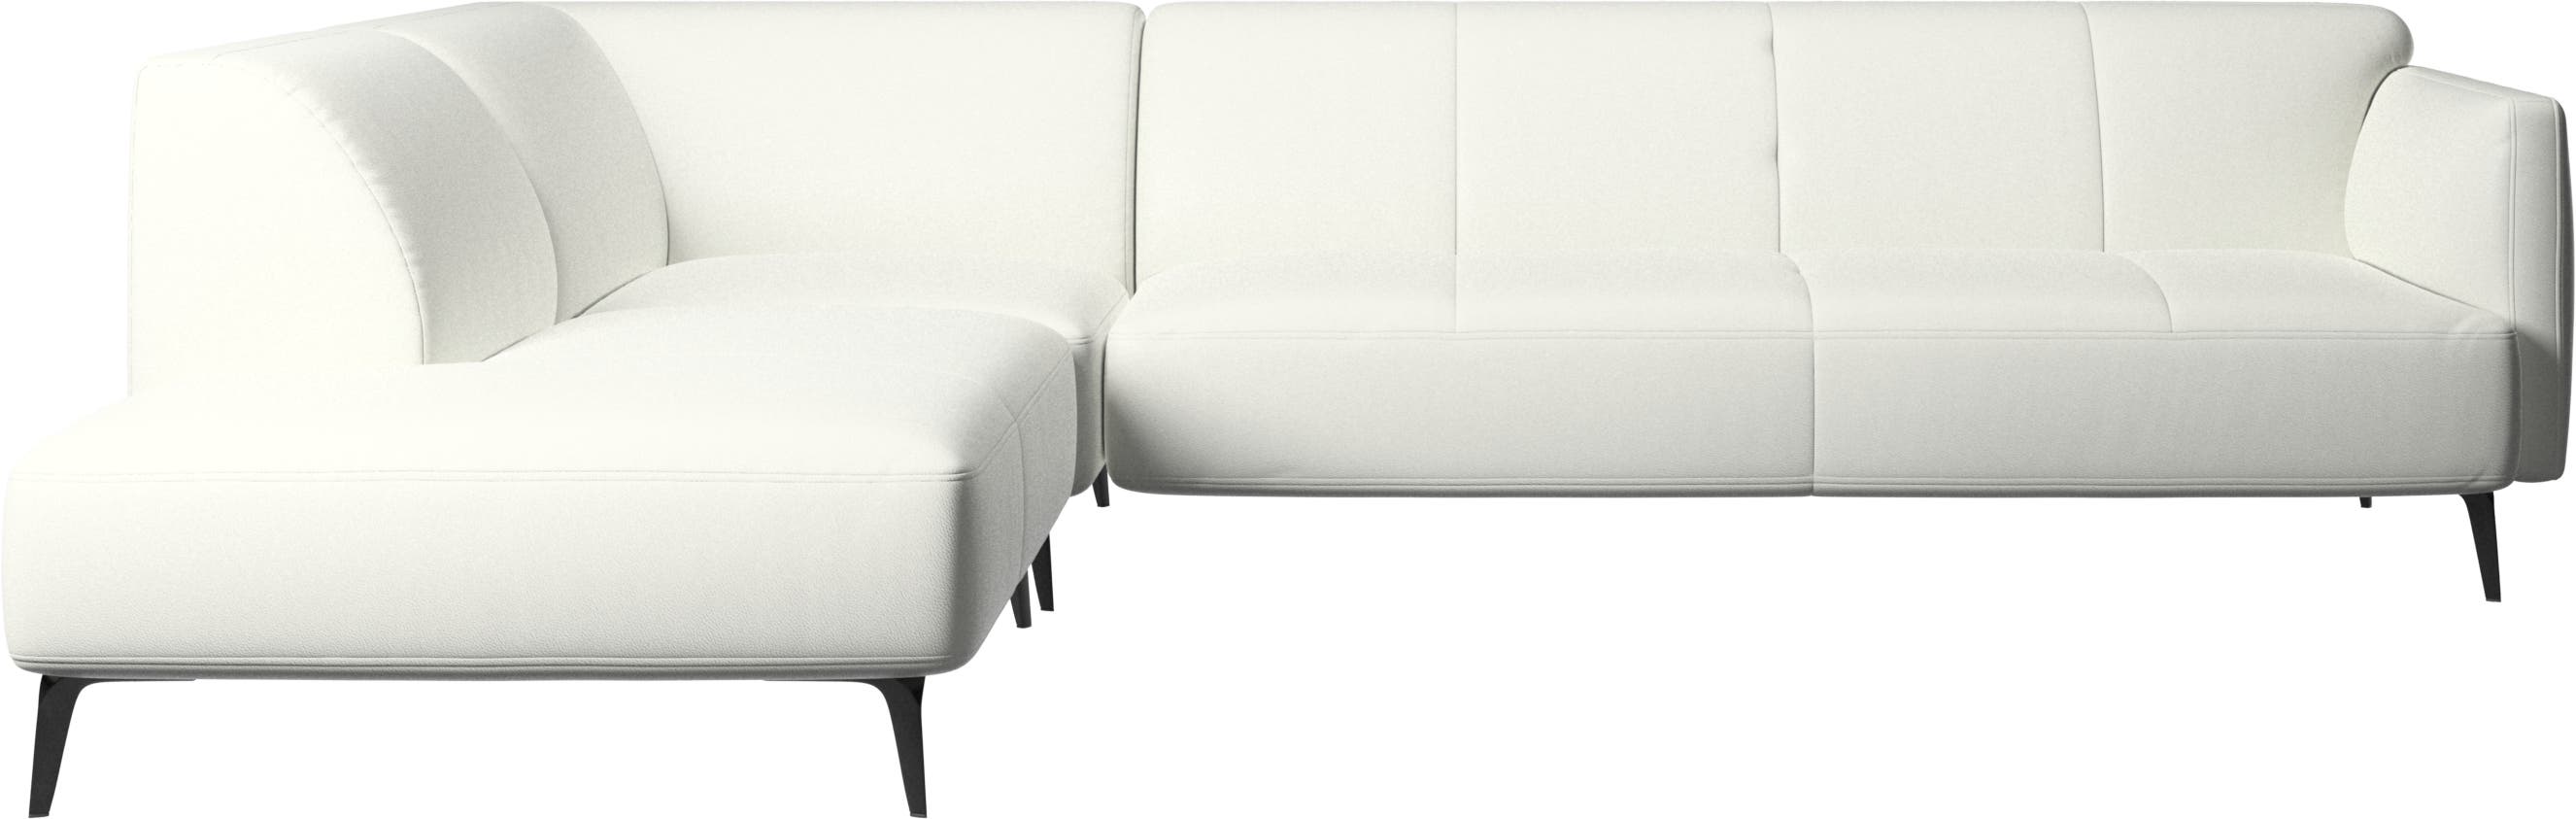 Canapé d'angle Modena avec module chaise longue